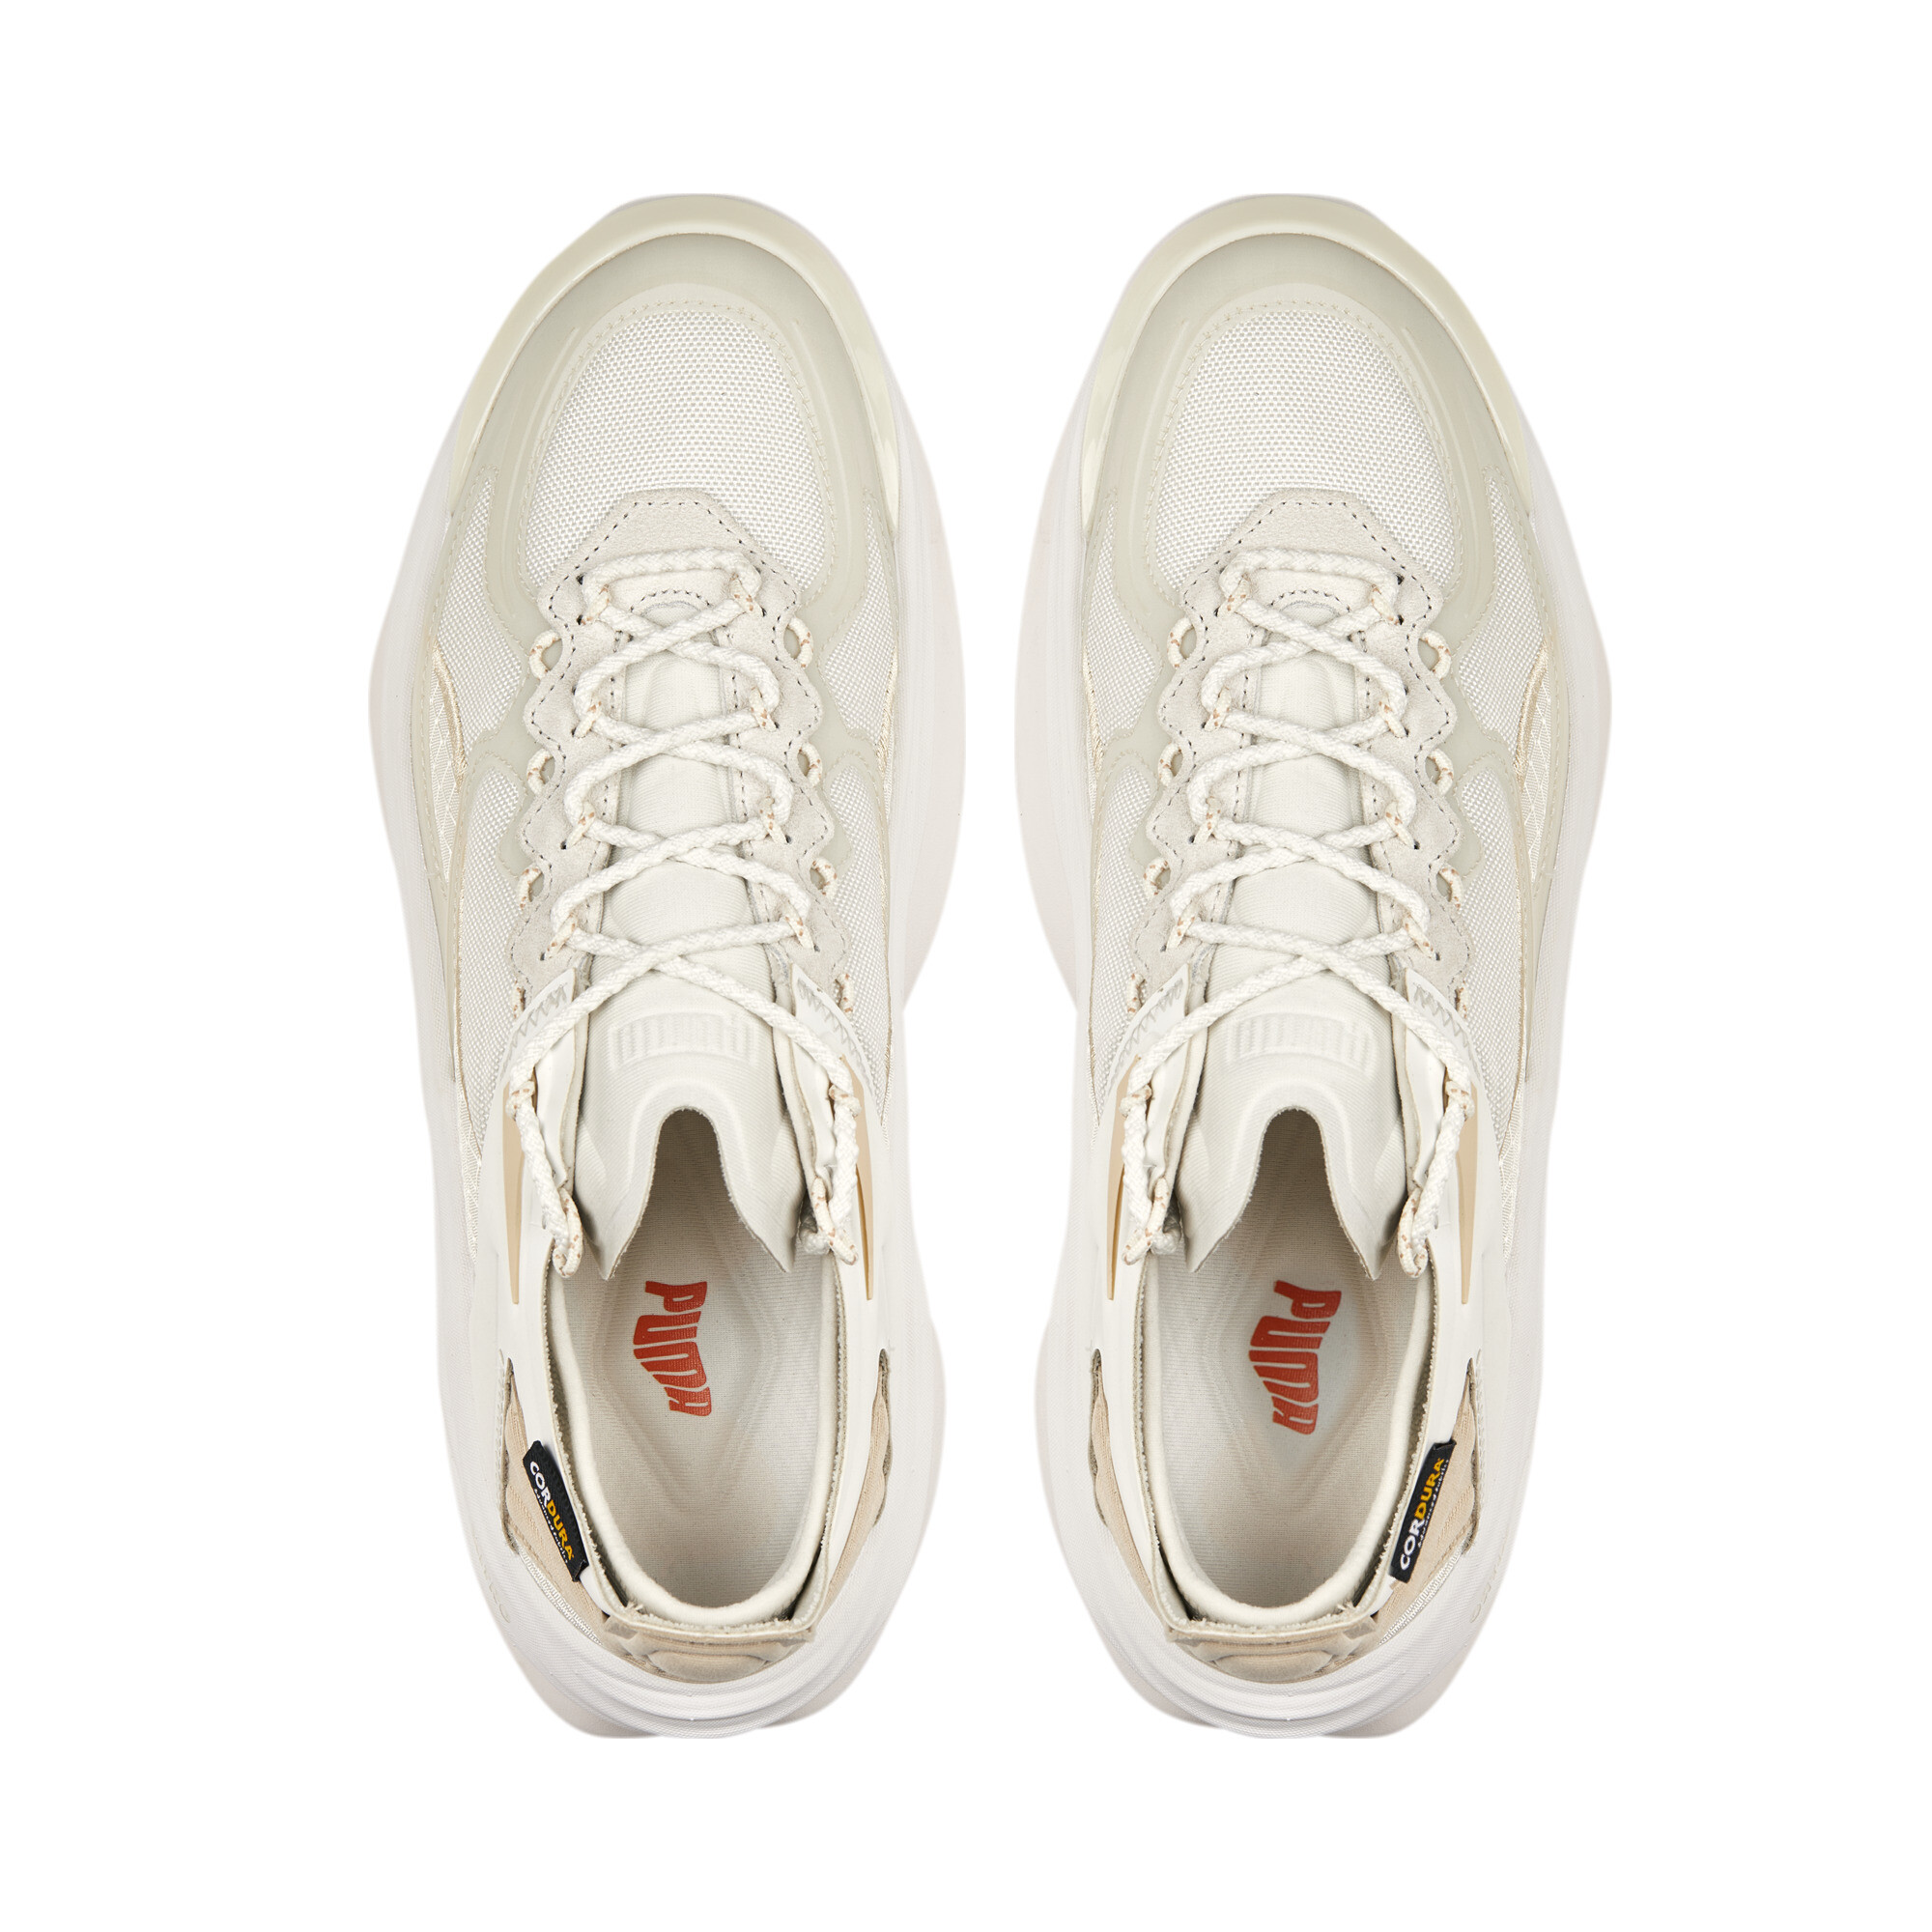 Men's PUMA Variant Nitro IL Sneakers In 30 - Gray, Size EU 37.5